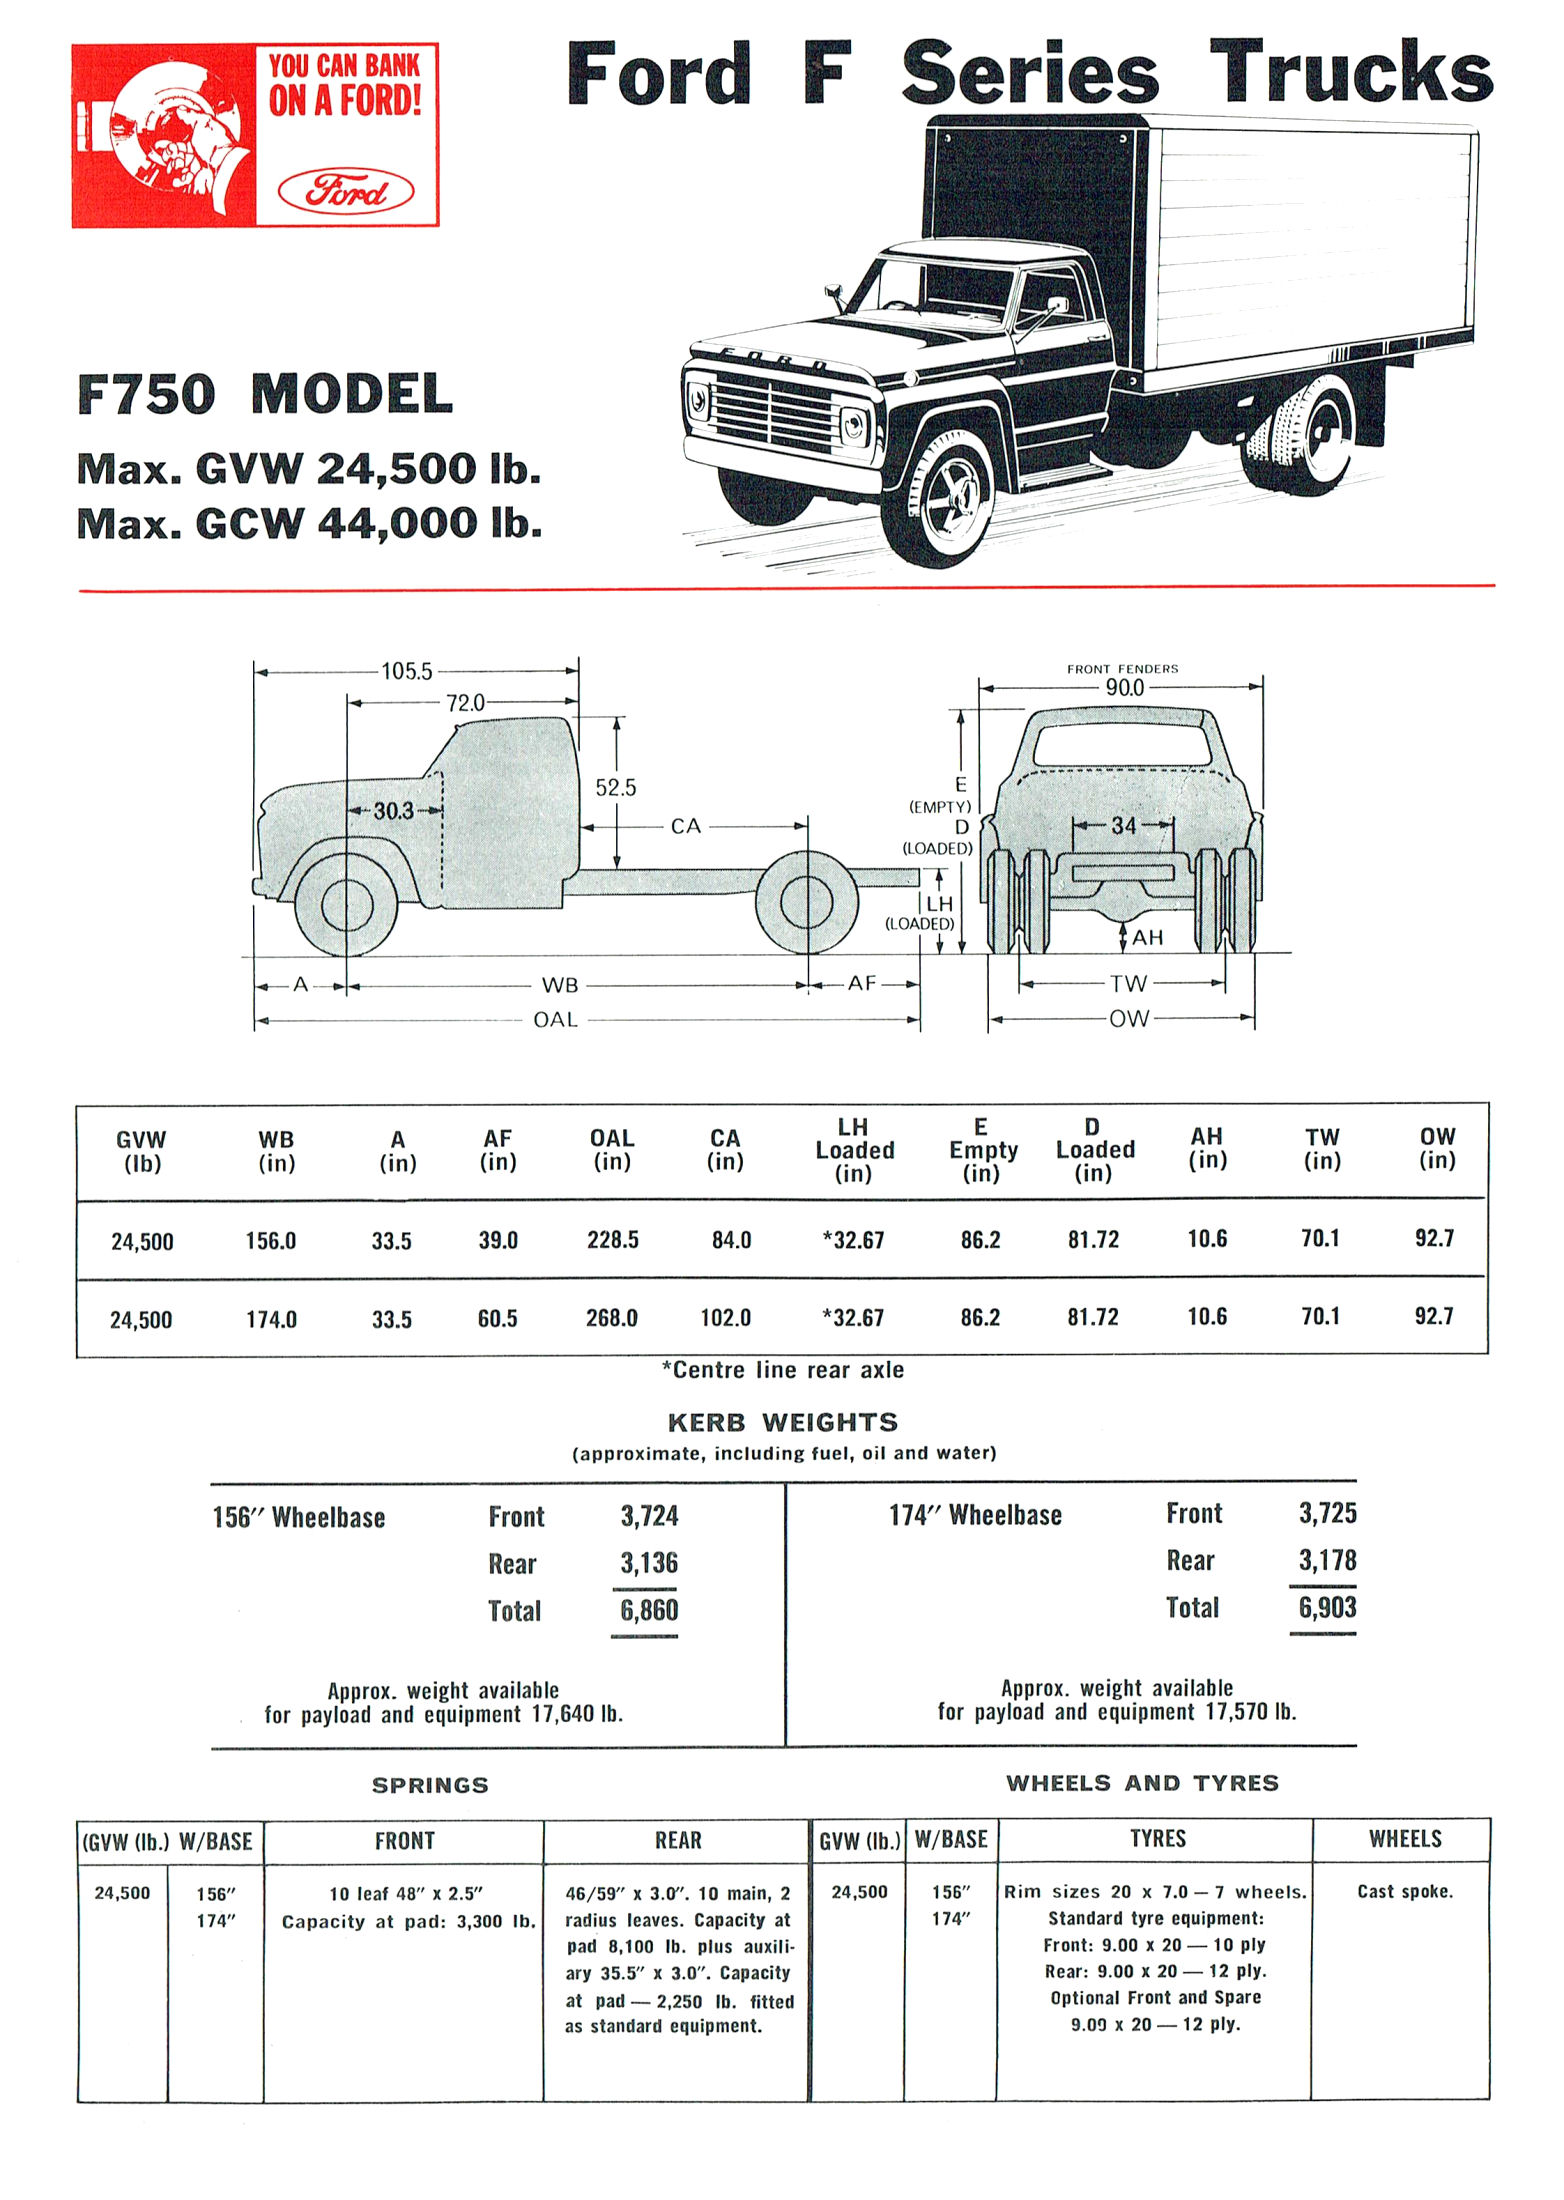 1968 Ford Trucks (Aus)-iF75a.jpg-2022-12-7 13.27.17